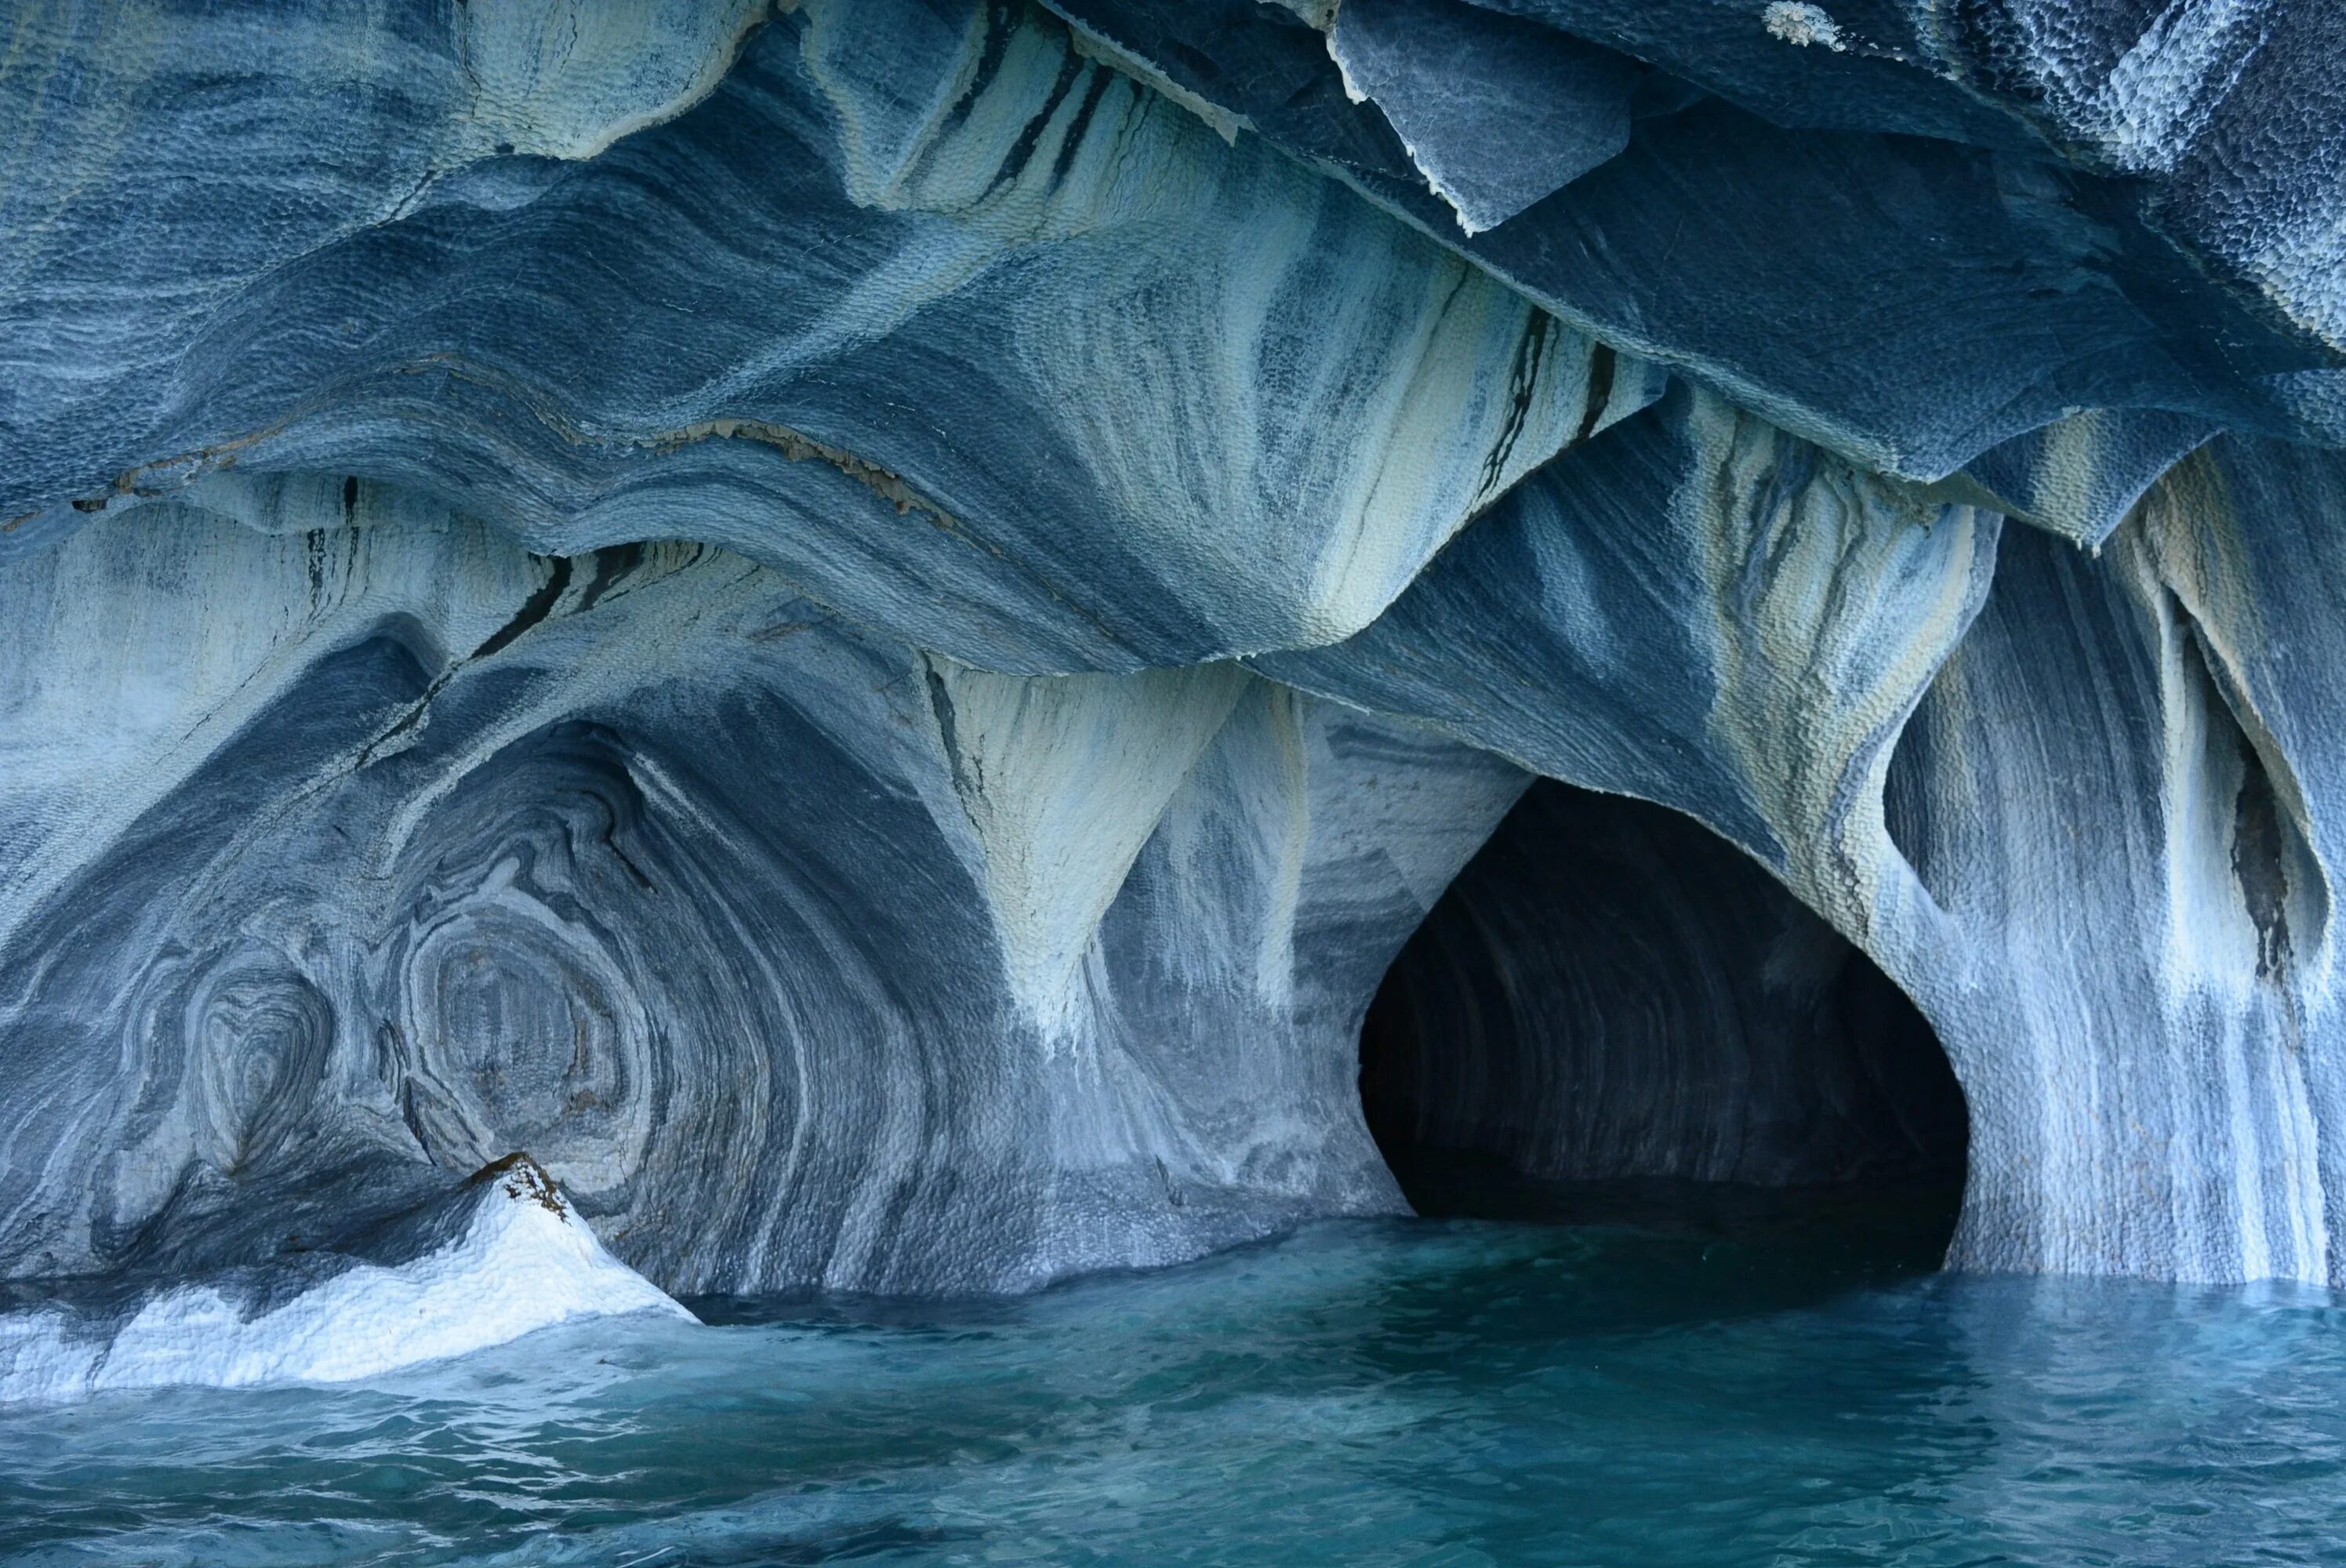 Пуэрто Рио Транкило мраморные пещеры. Мраморные пещеры Чиле-Чико, Чили. Мраморные пещеры Патагонии. Мраморная пещера окрстр. Самый большой географический объект в мире